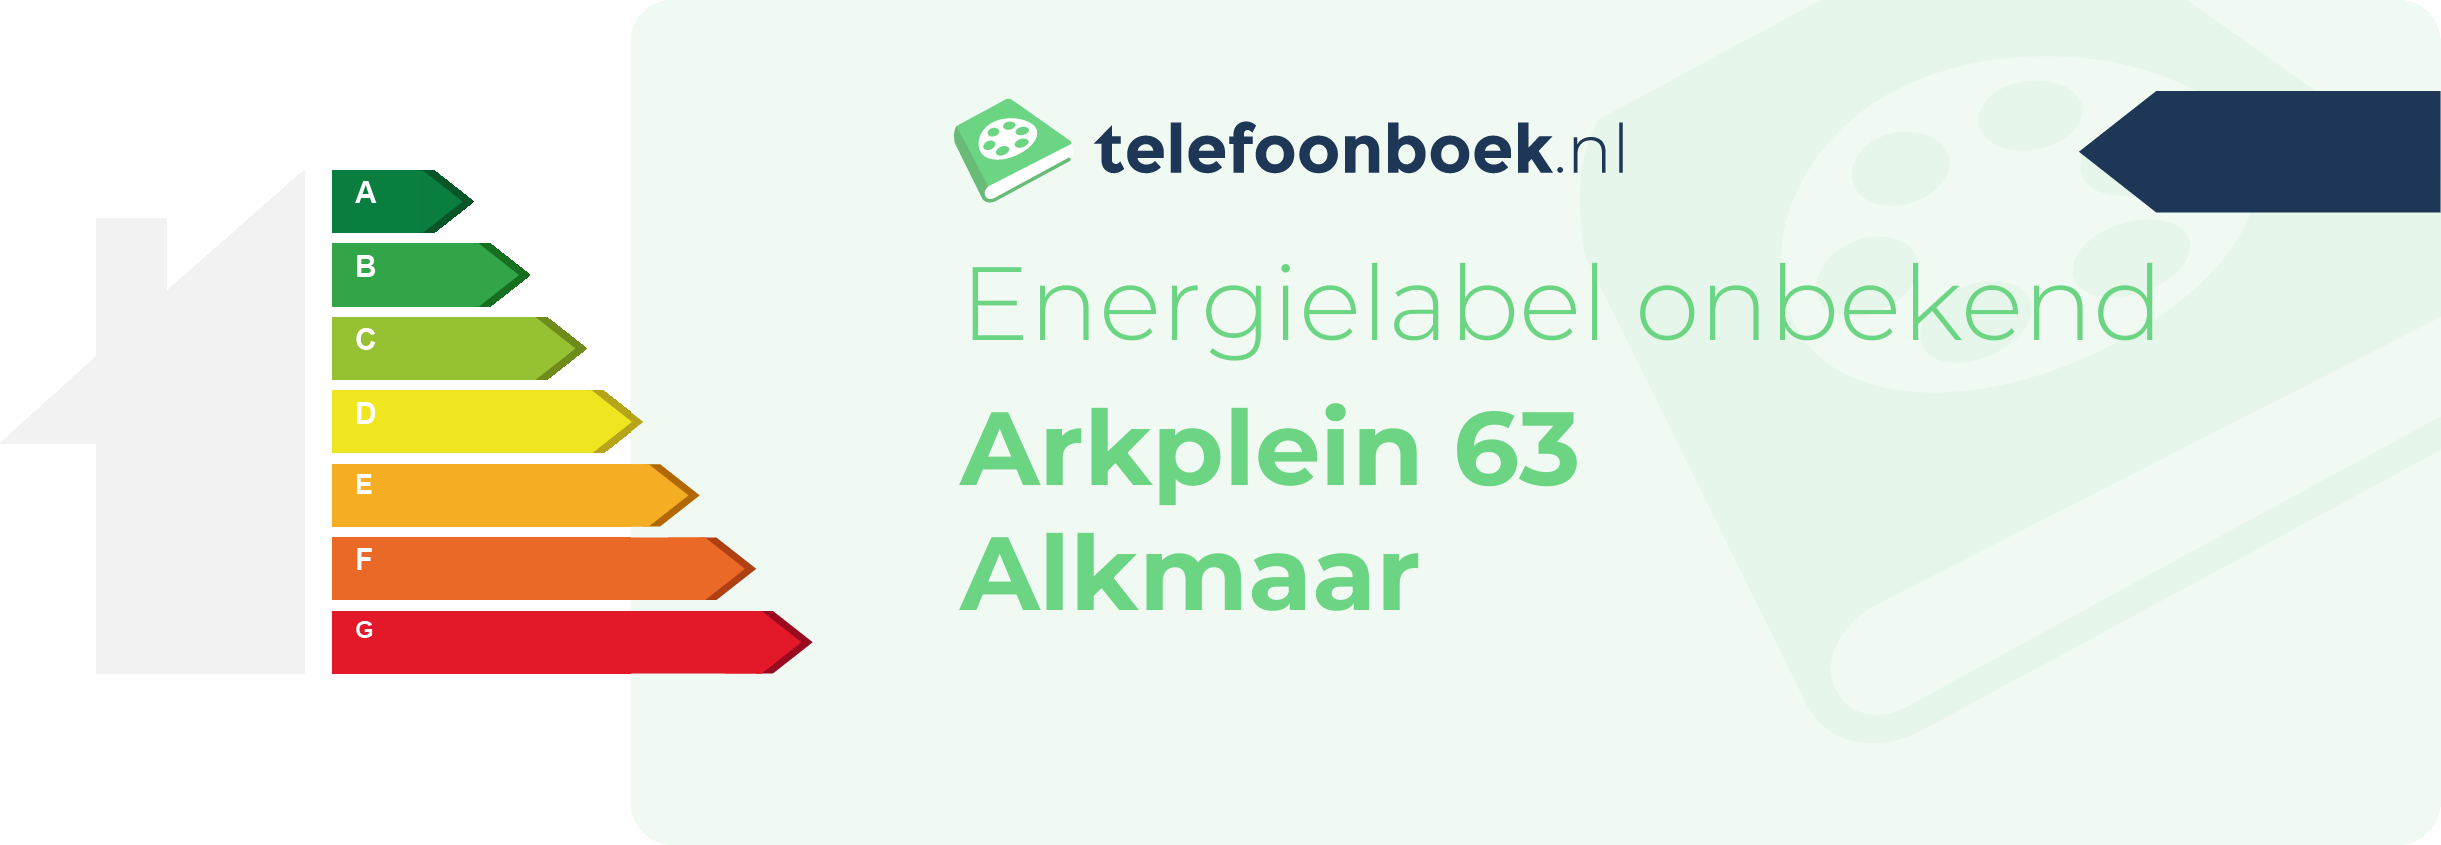 Energielabel Arkplein 63 Alkmaar